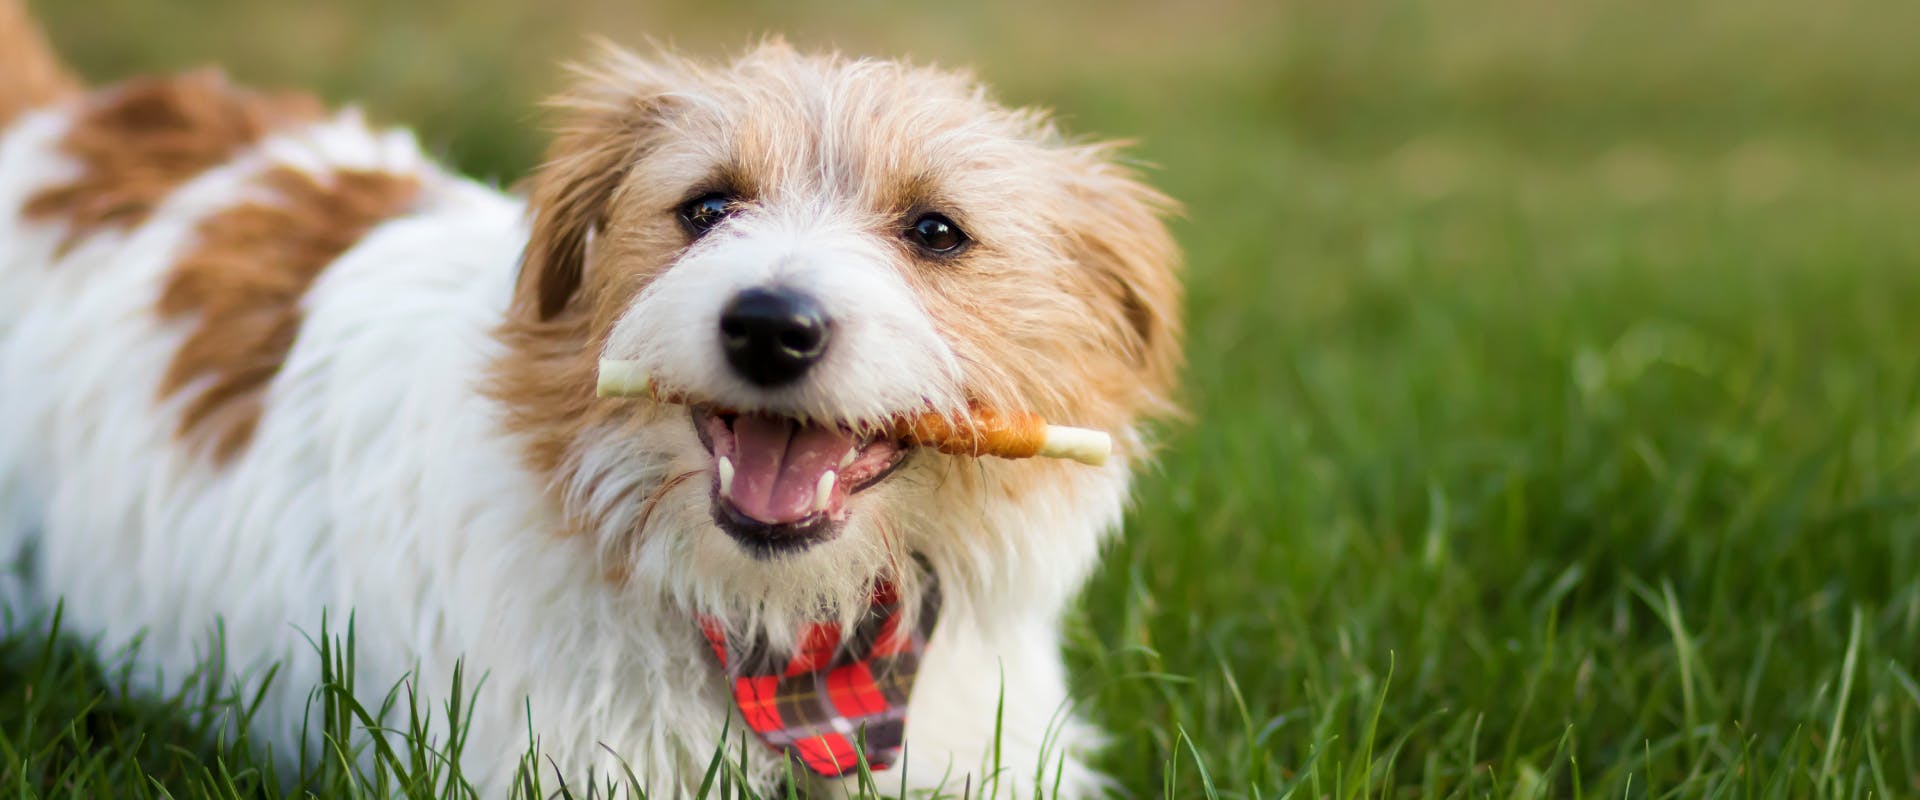 A dog chews on a treat.